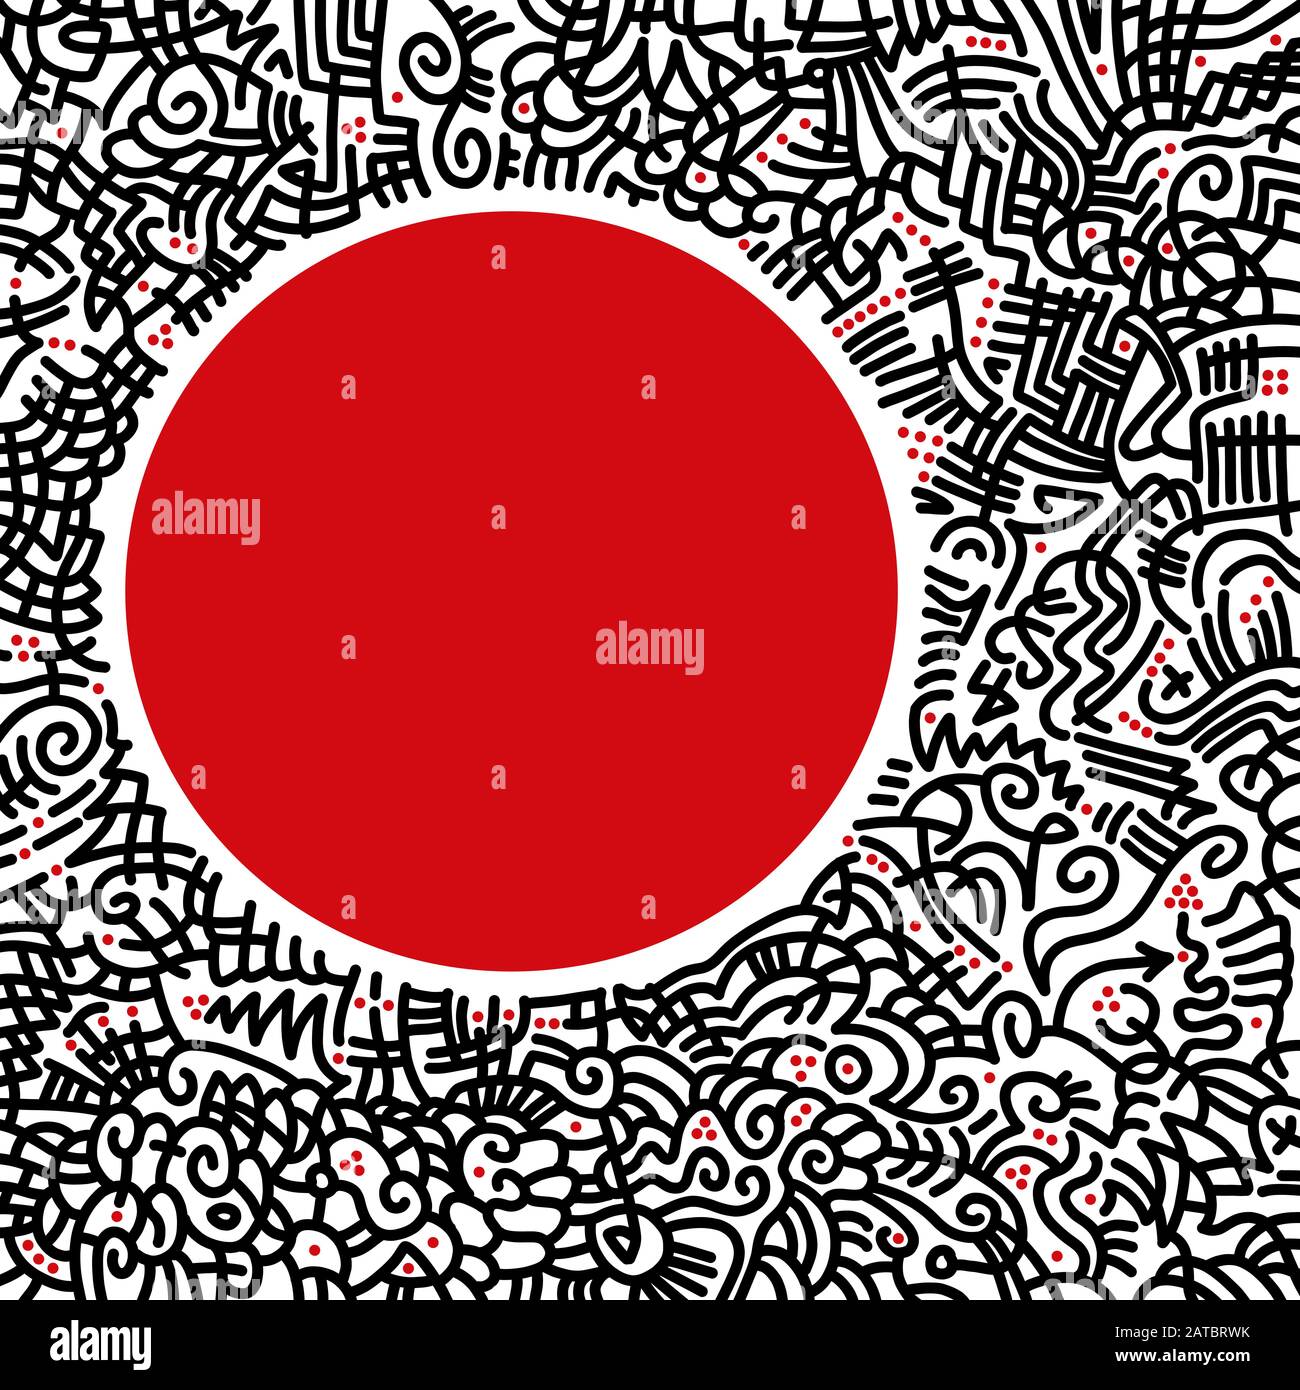 Cornice quadrata colorata disegnata a mano con motivi astratti, fatta di curve e linee nere. Con punti rossi e un grande cerchio rosso a forma di spazio libero. Foto Stock